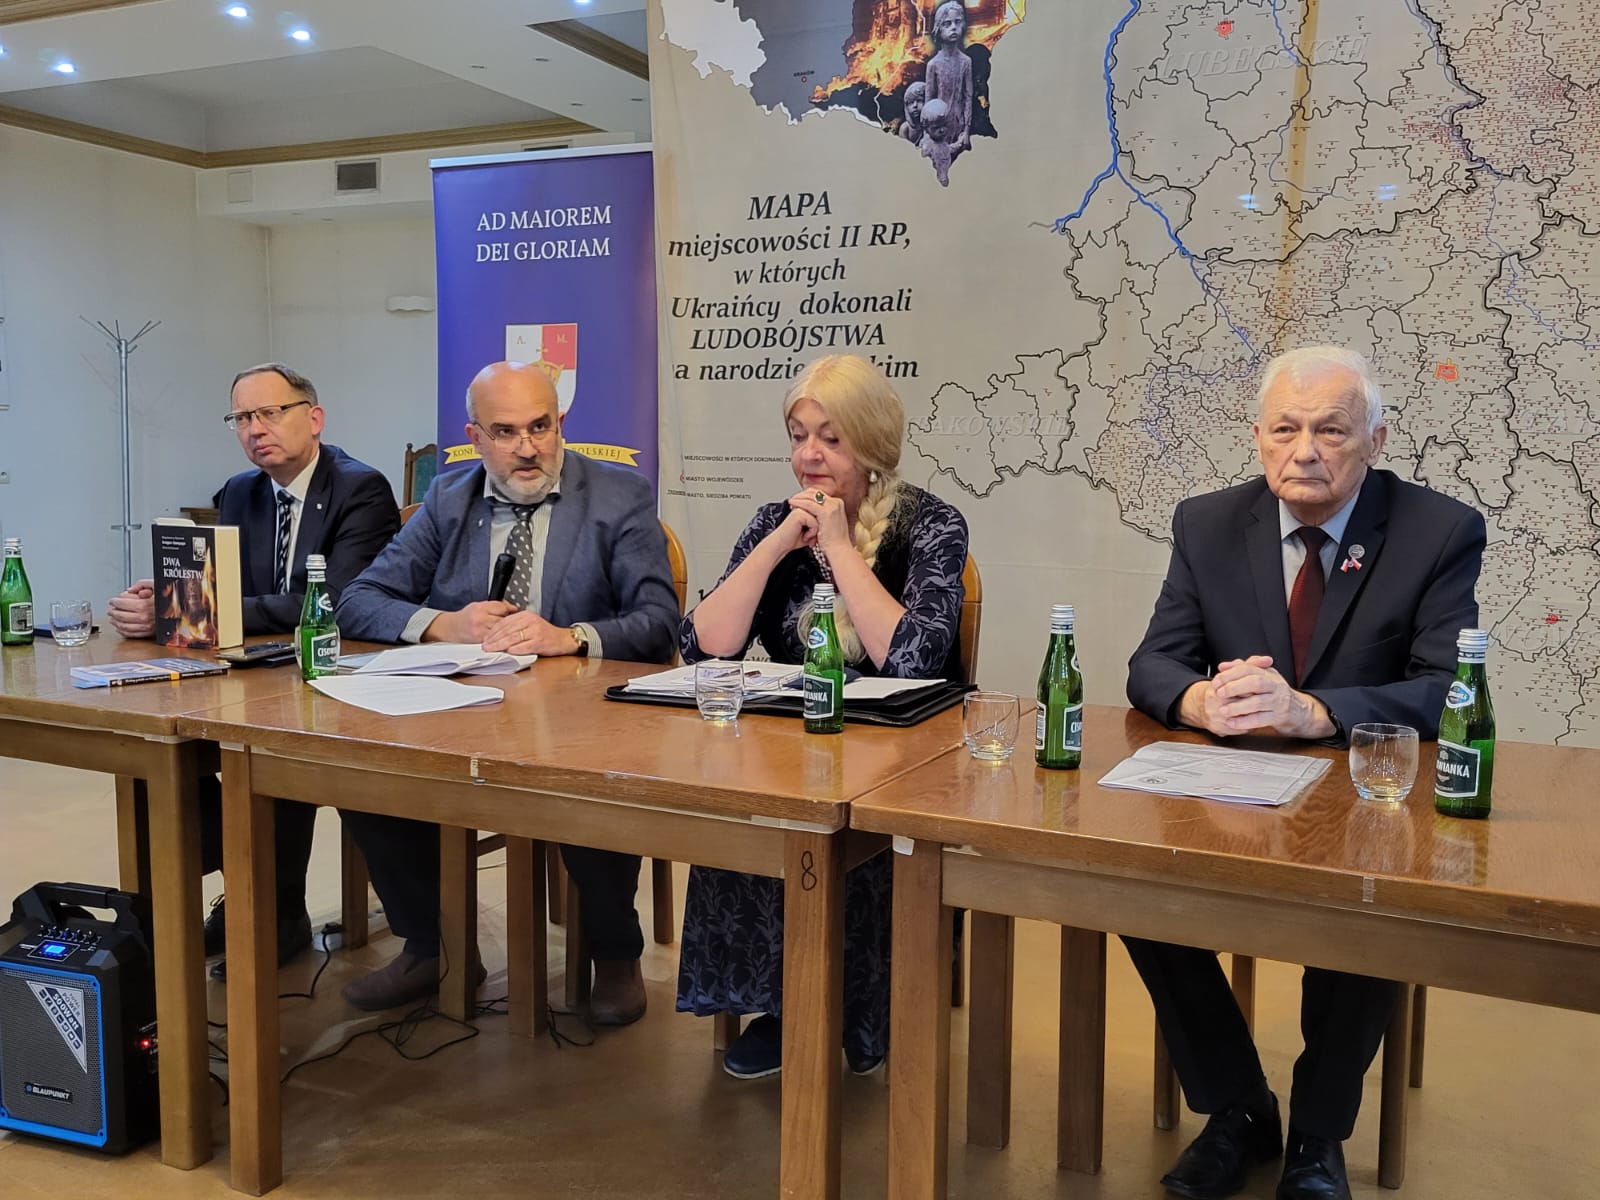 Spotkanie dotyczące ludobójstwa ukraińskich nacjonalistów